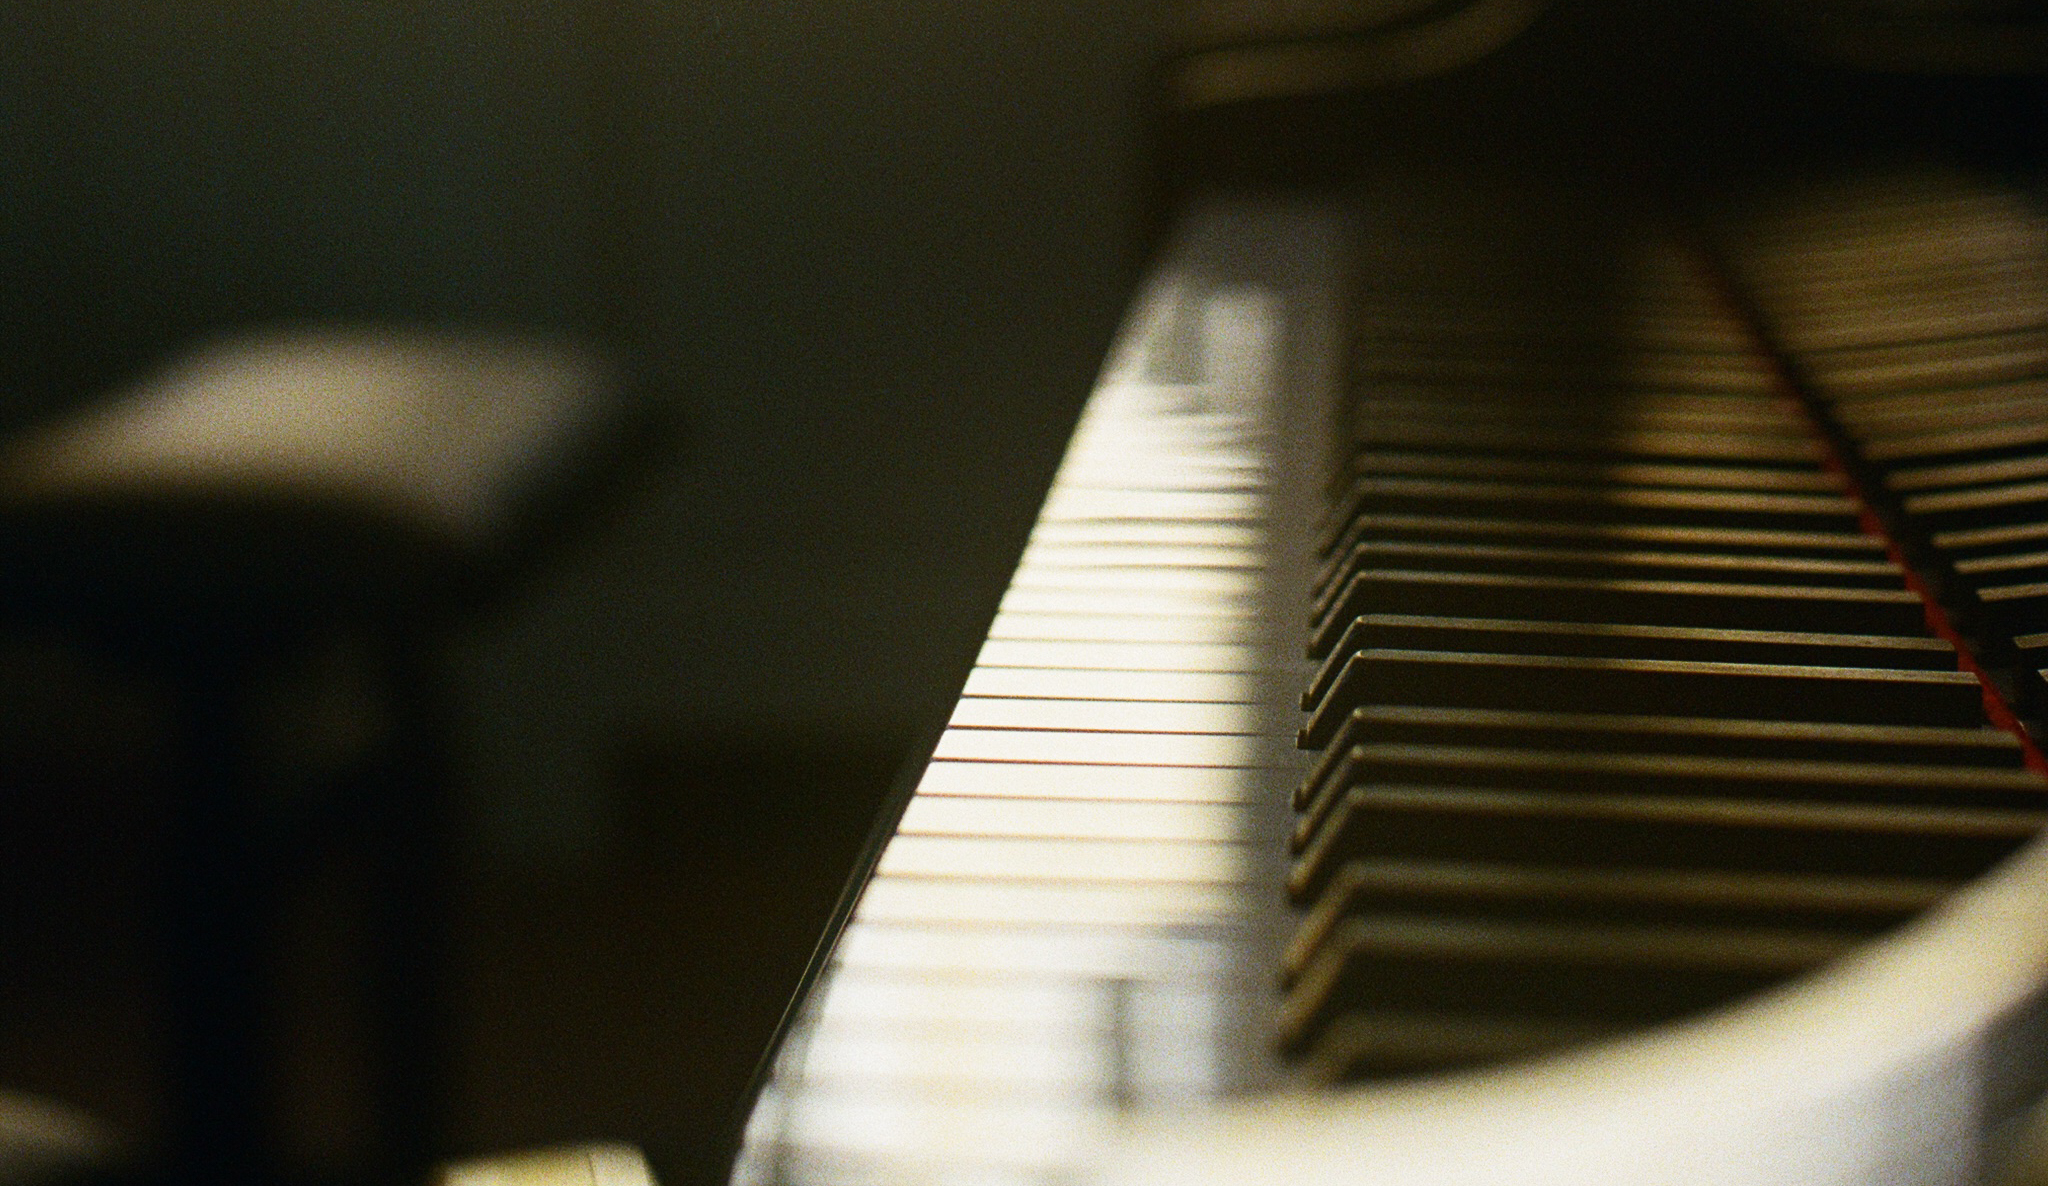 ピアノの鍵盤の写真